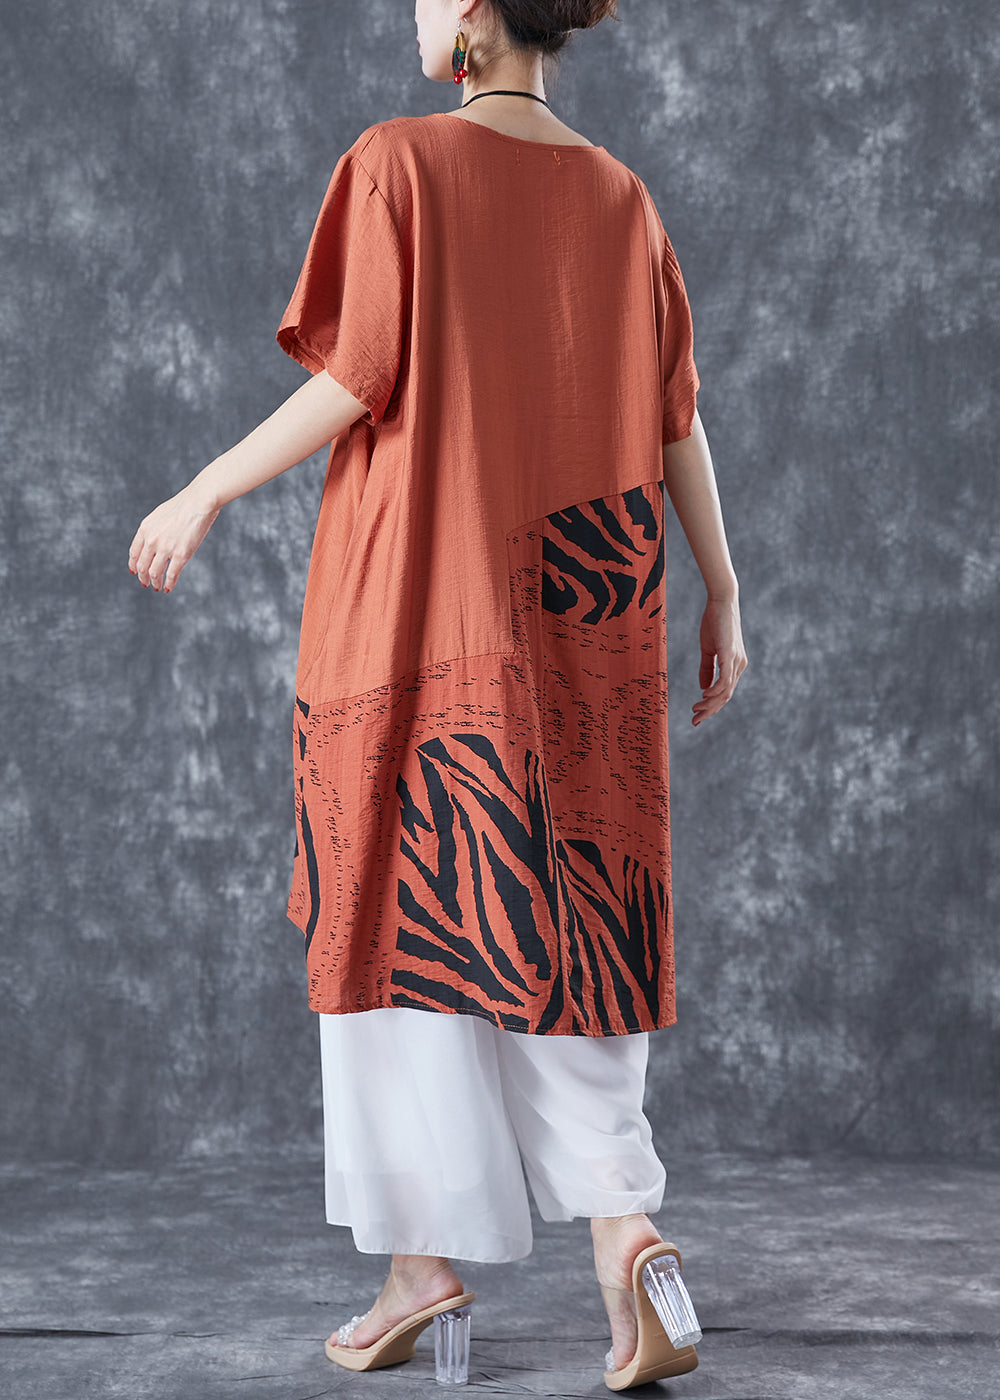 Boho Orange Oversized Patchwork Cotton Dress Summer LY5628 - fabuloryshop